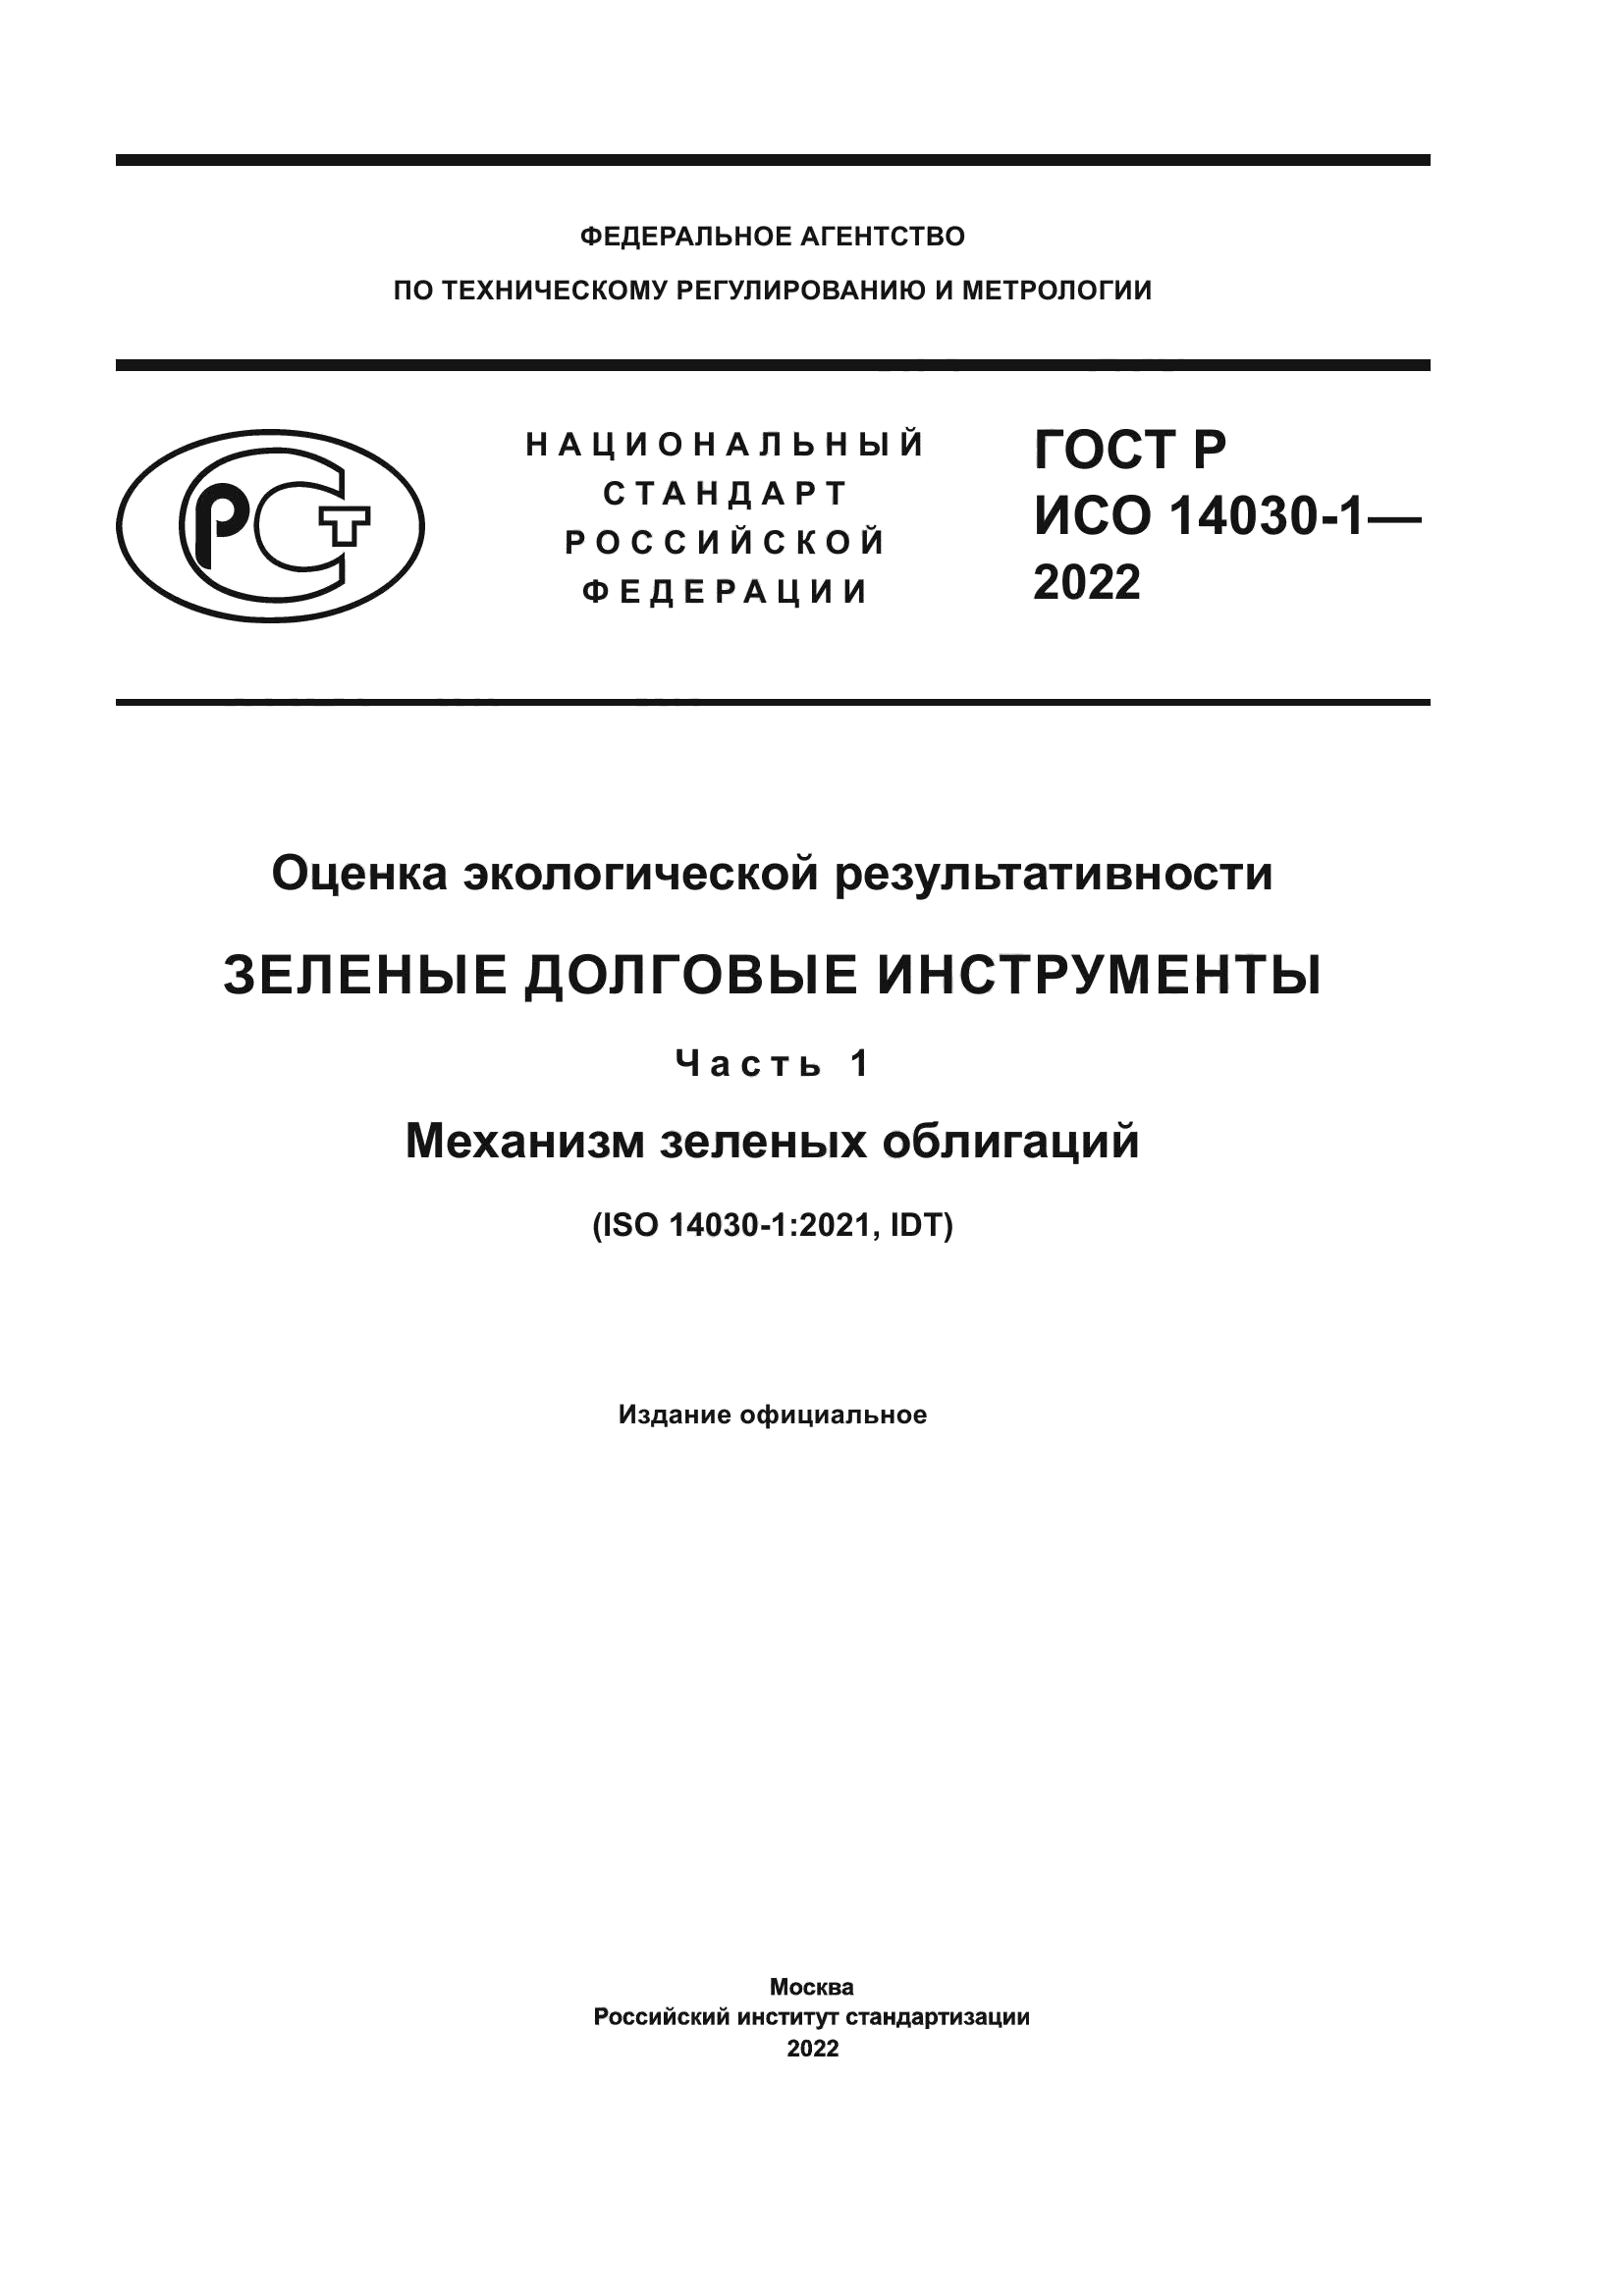 ГОСТ Р ИСО 14030-1-2022